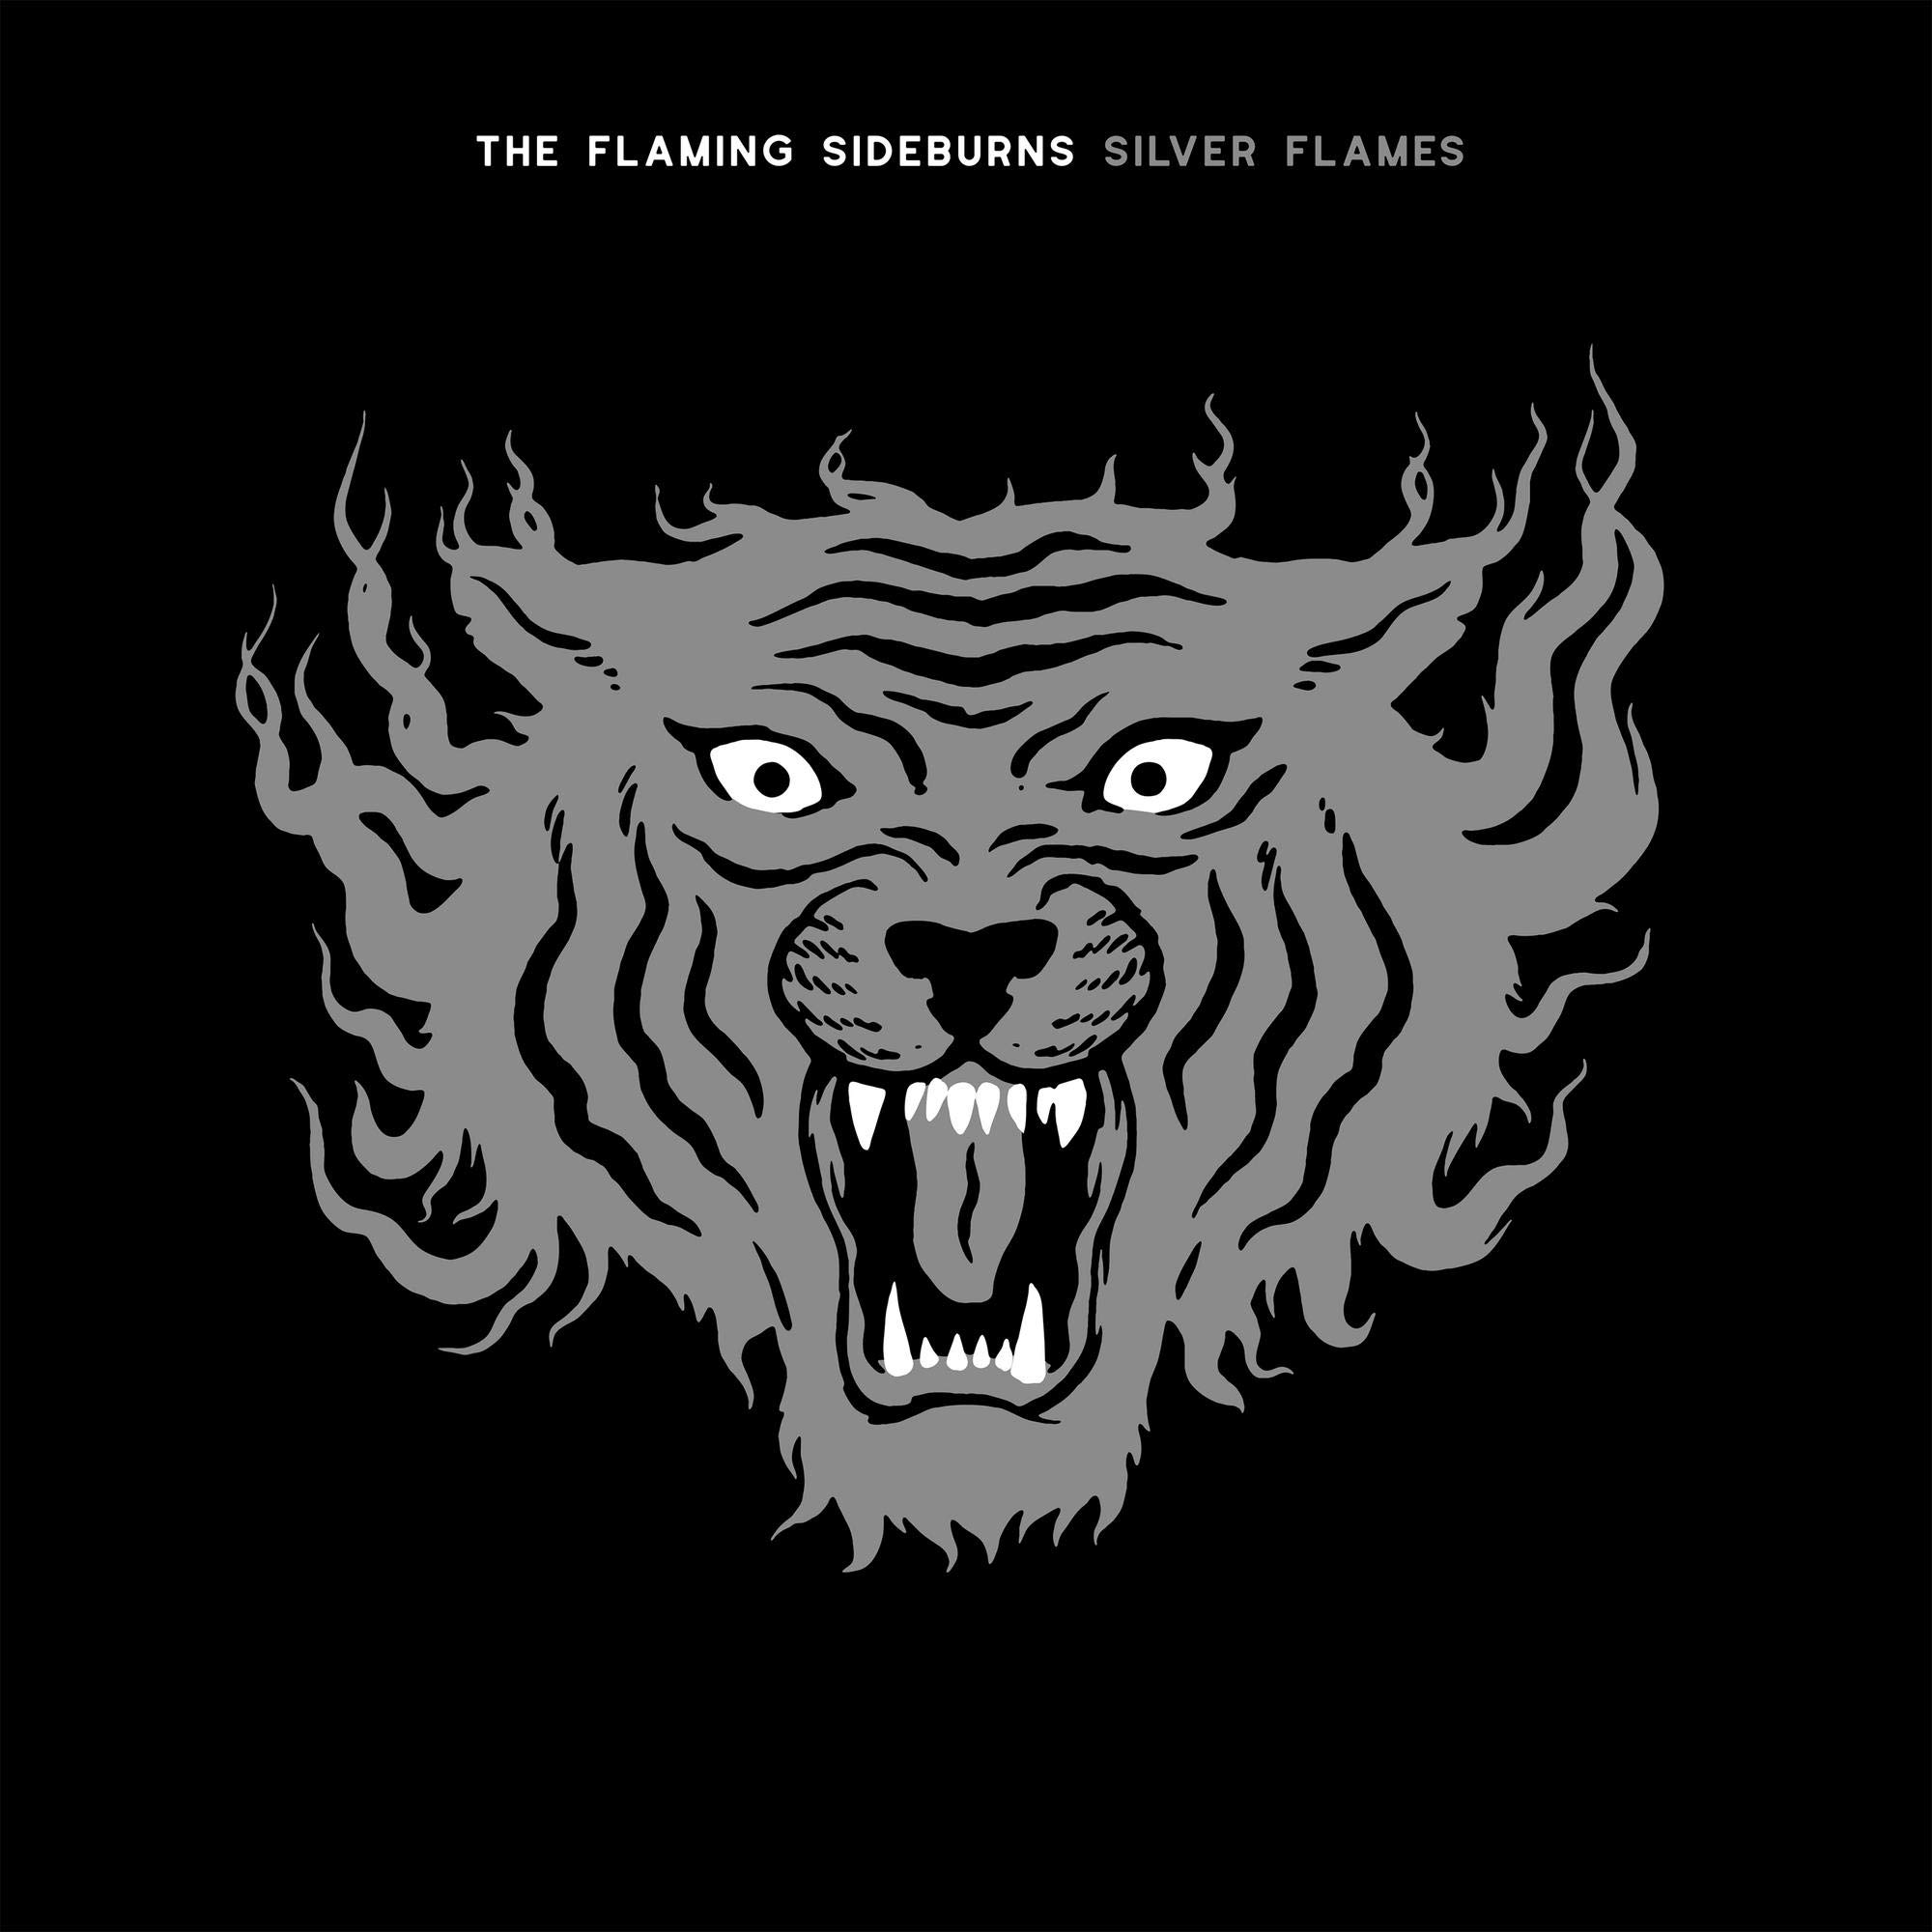 Vinile Flaming Sideburns - Silver Flames NUOVO SIGILLATO, EDIZIONE DEL 30/04/2021 SUBITO DISPONIBILE